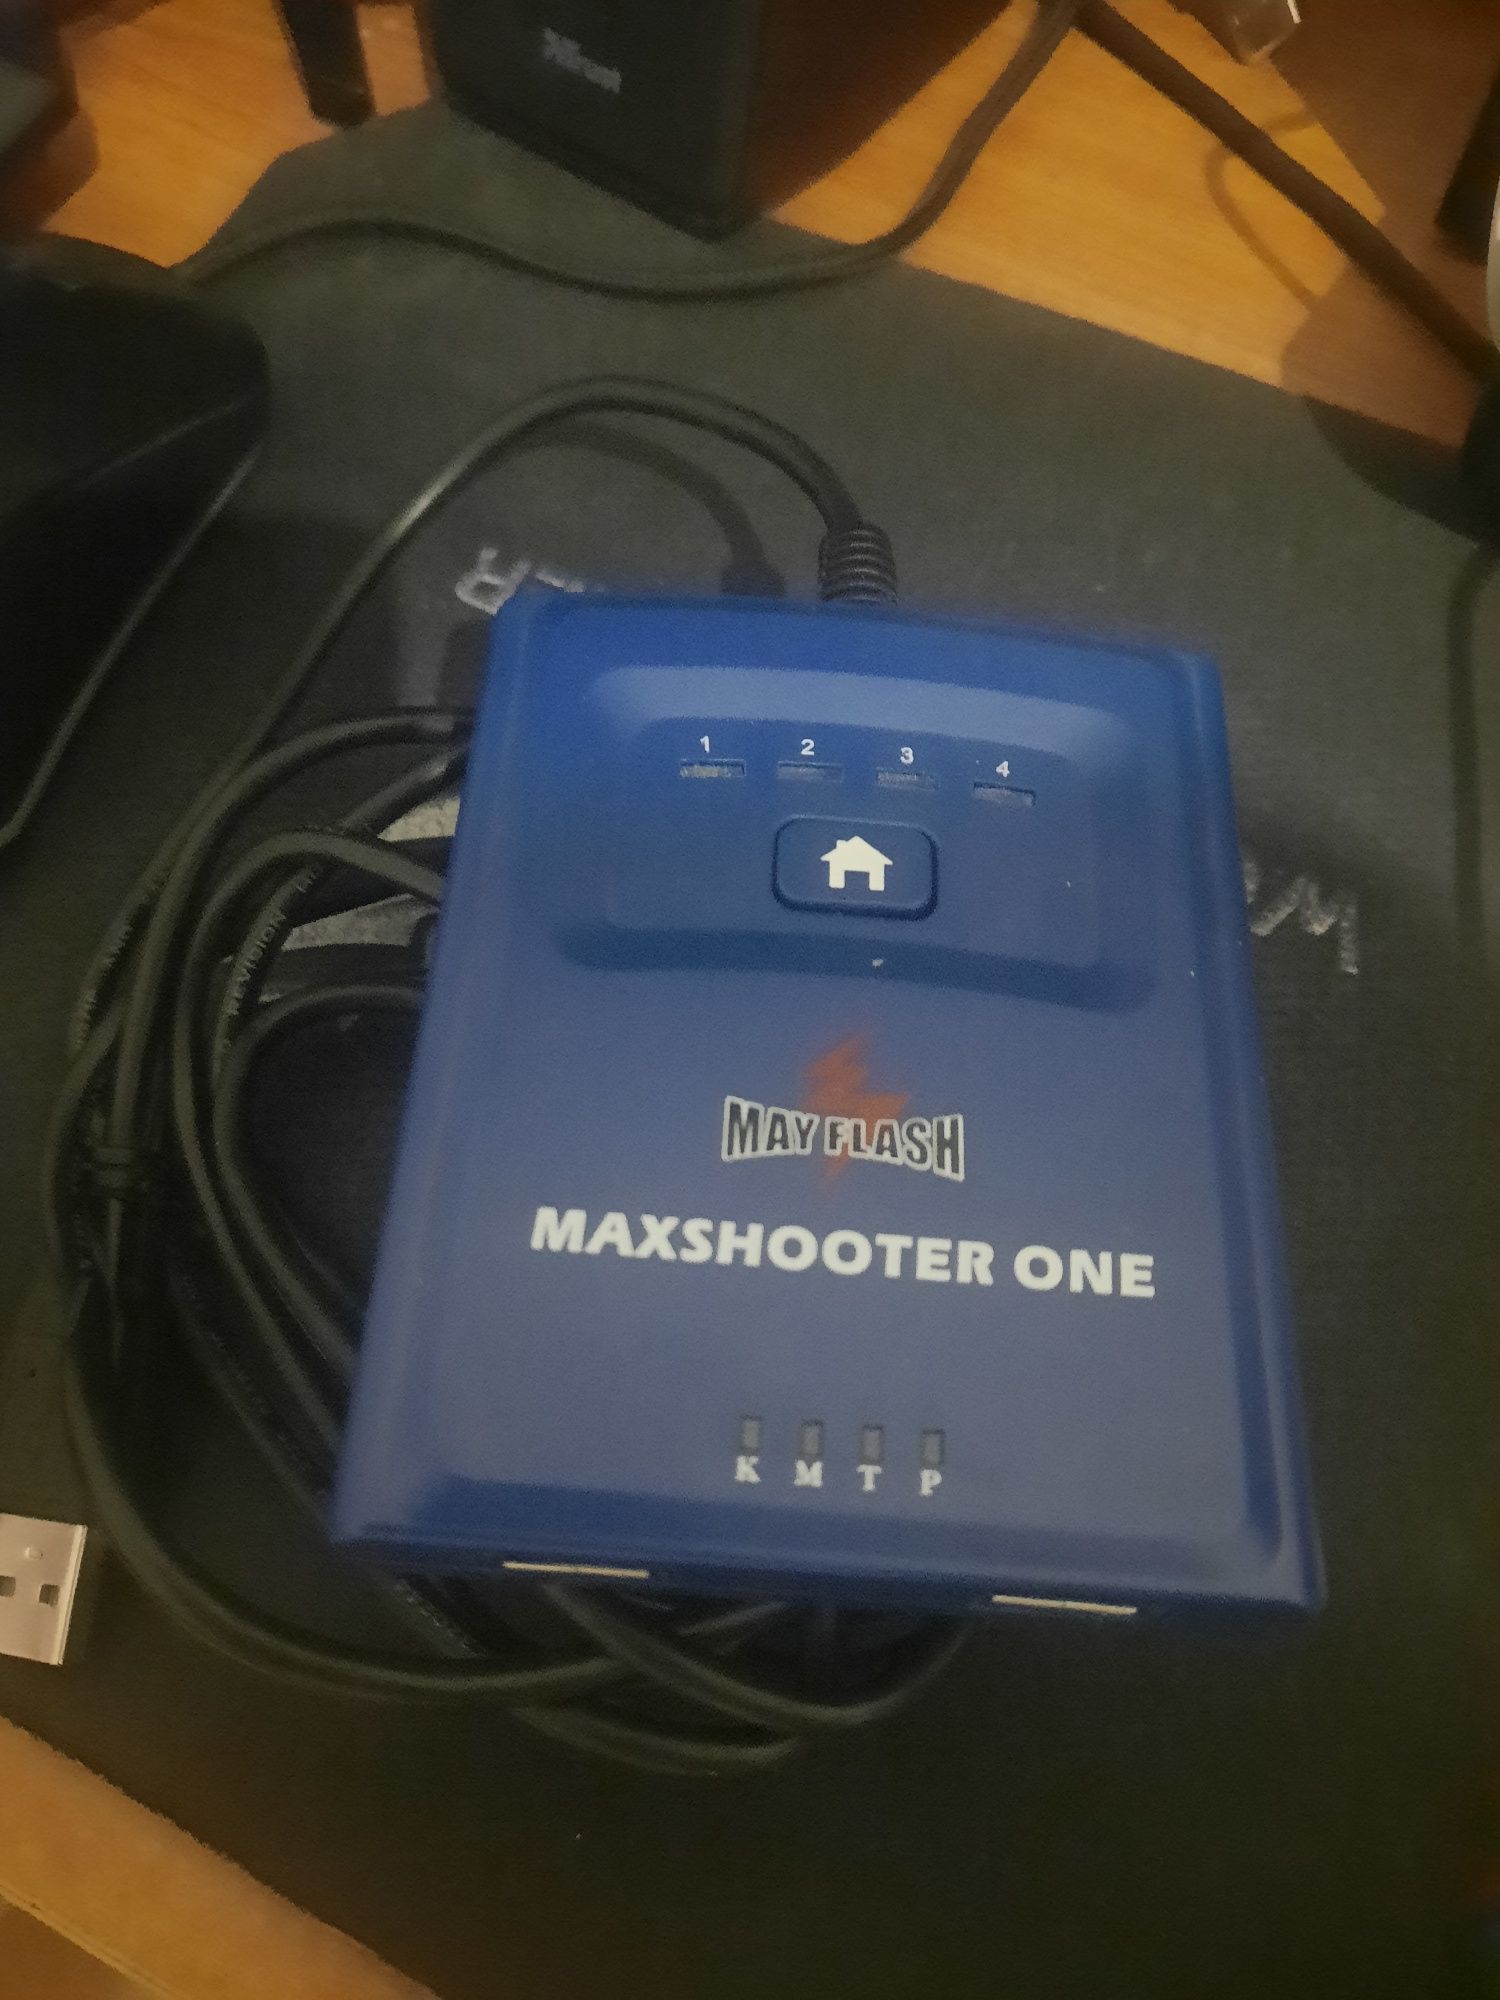 Maxshooter one, May flash, adaptador